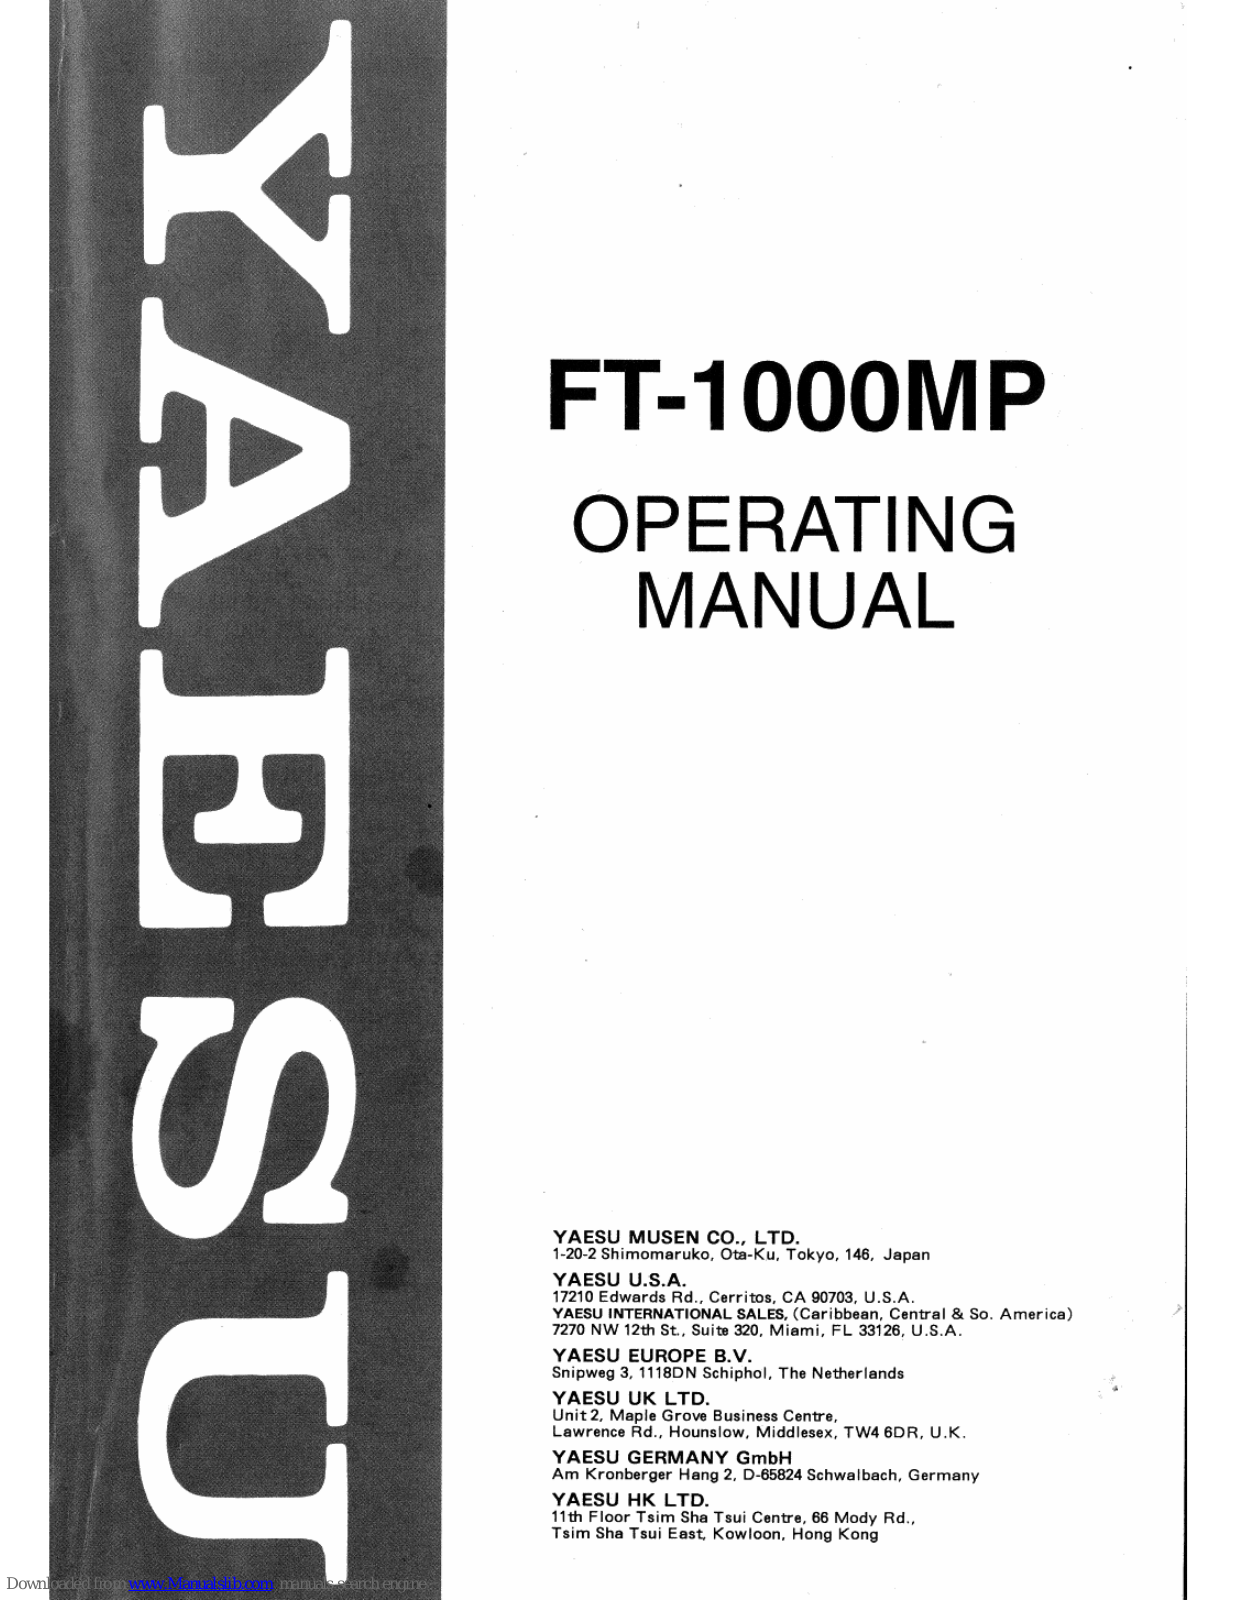 Yaesu FT-1000MP Operating Manual